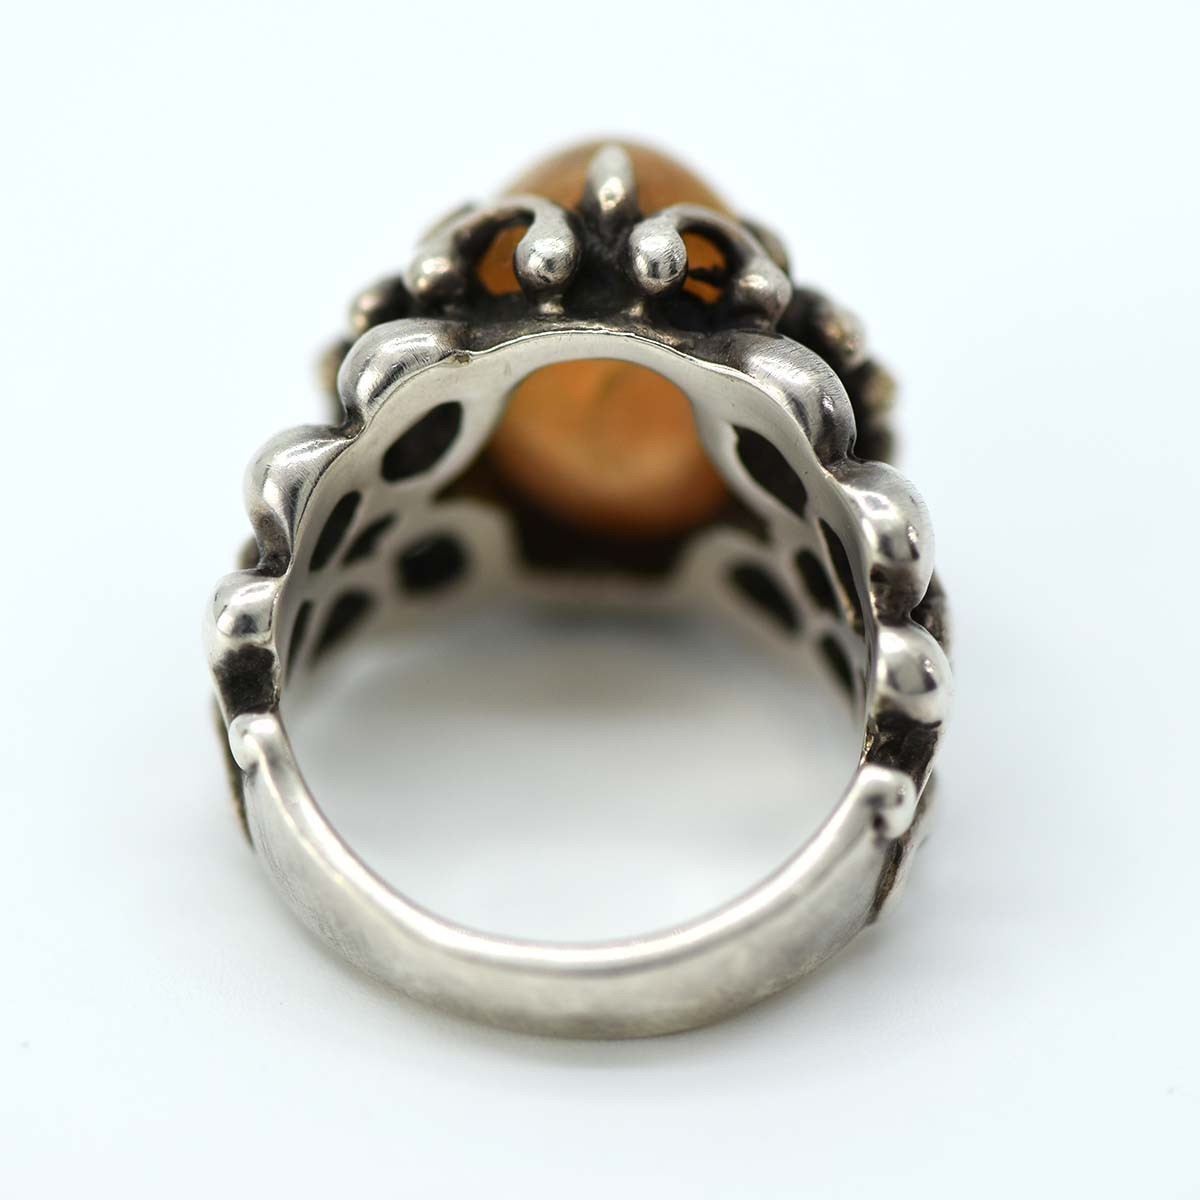  ломбард geodesiqueji.ote Schic кольцо SV950 9.5 номер orange цвет камень кольцо серебряный аксессуары que... ломбард 